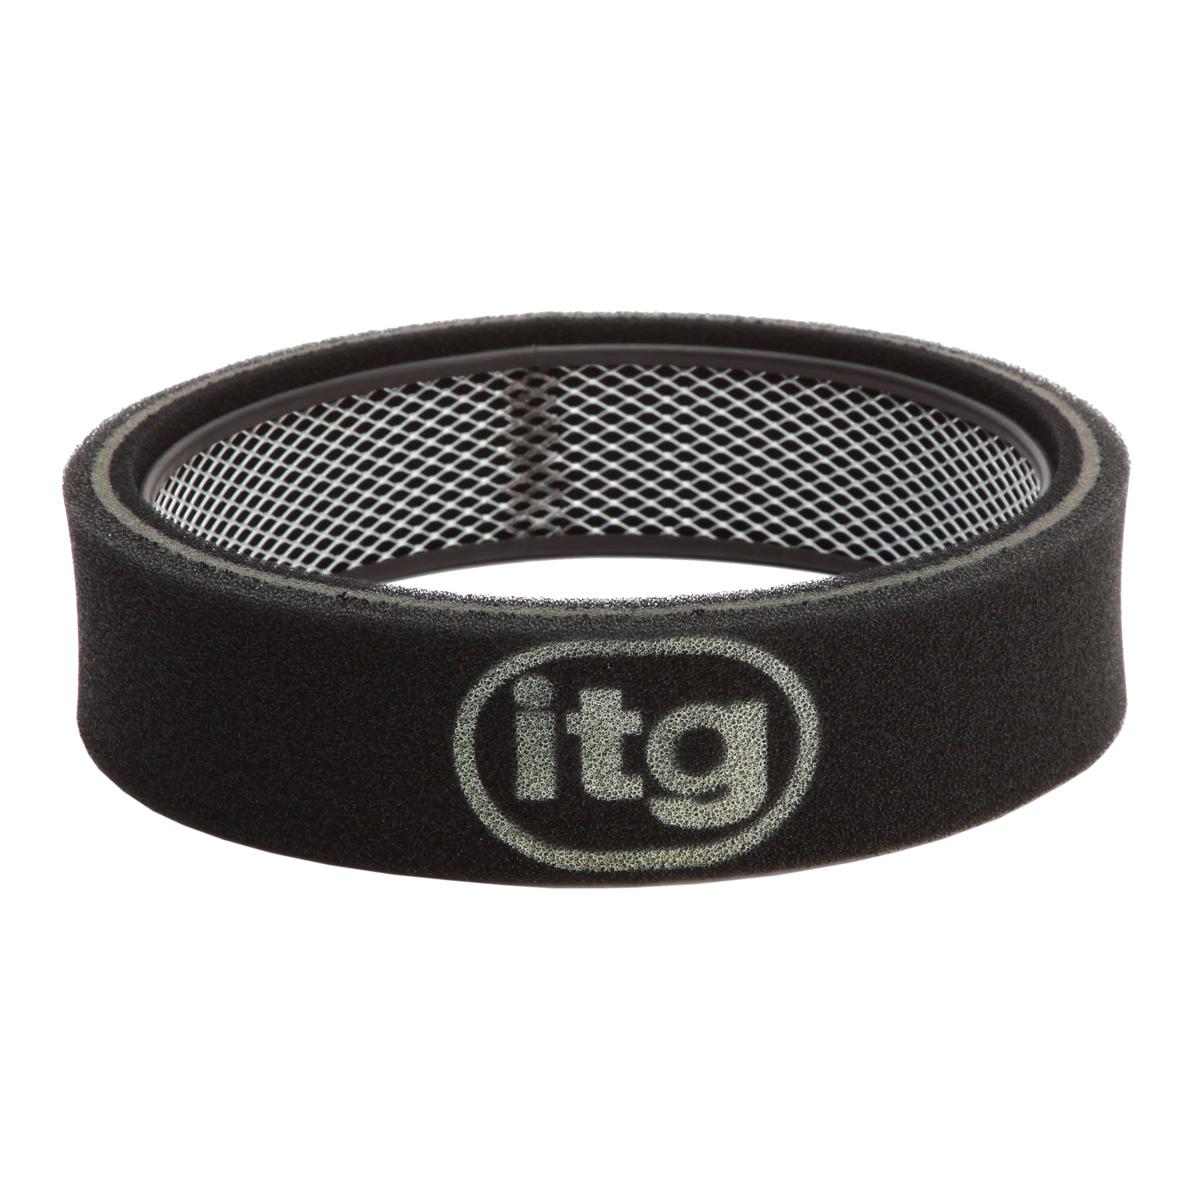 Filtro dell'aria di ITG per il sedile Ibiza 1.4I (05/94>)